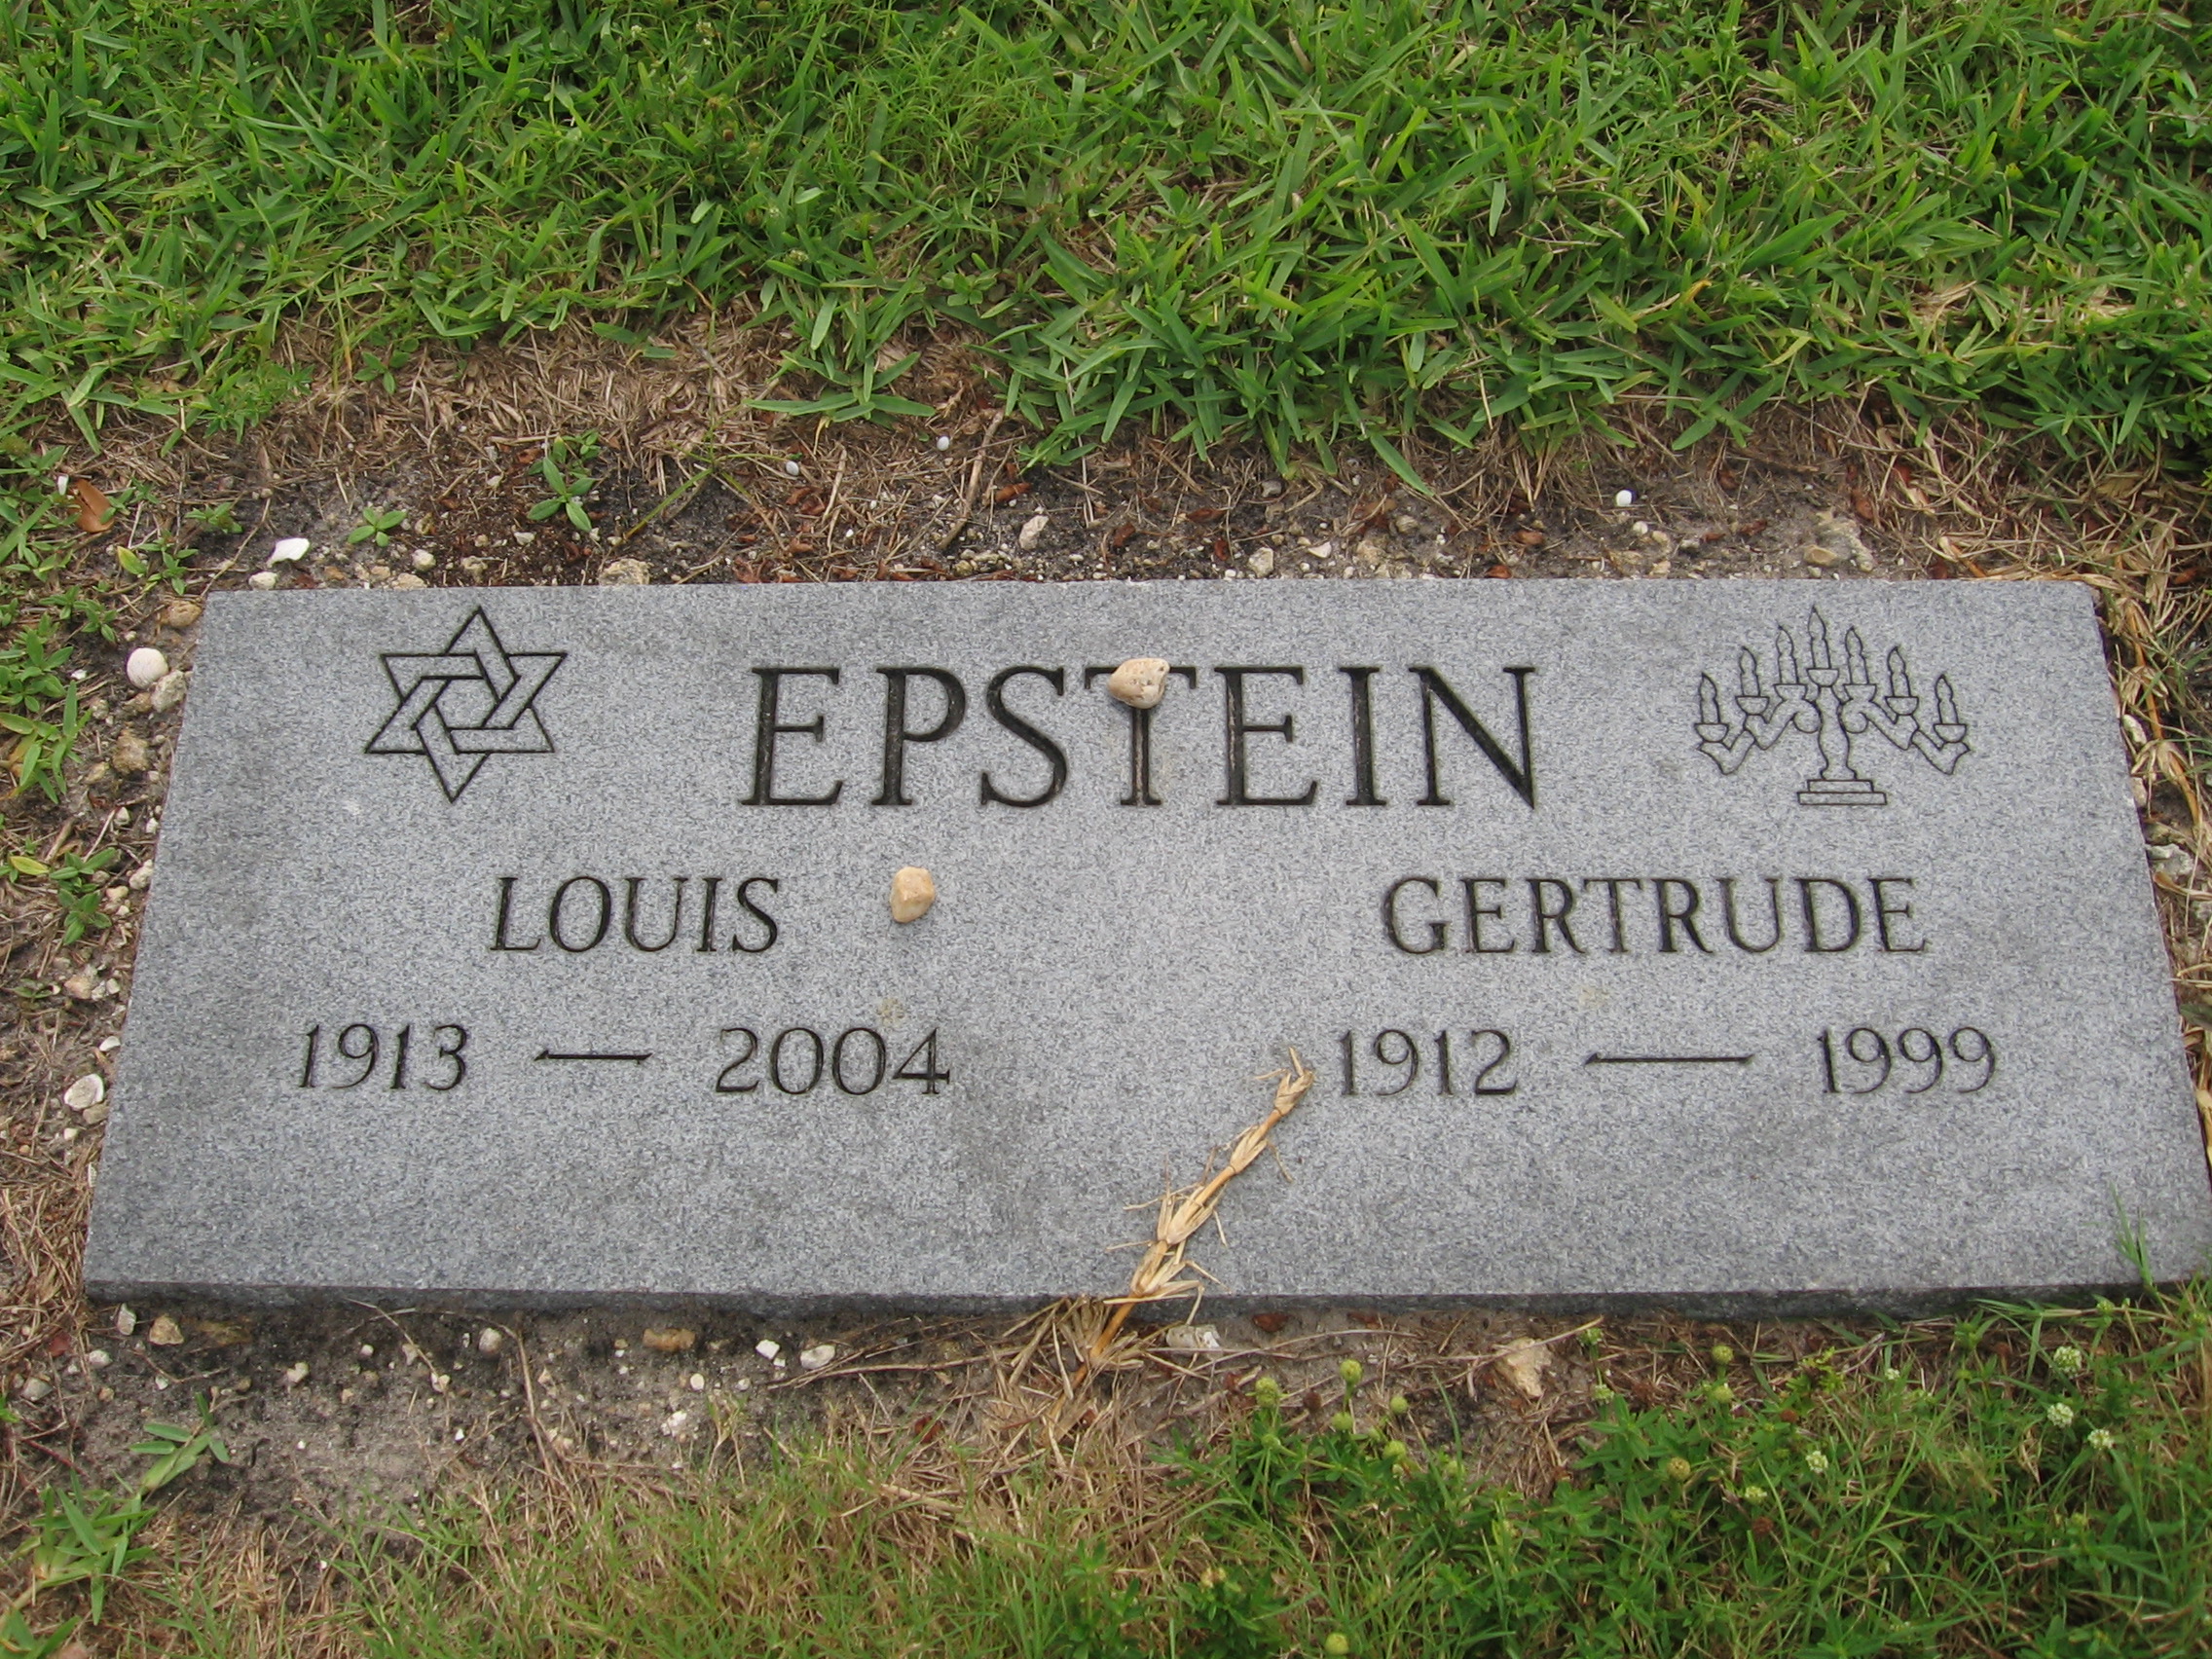 Louis Epstein